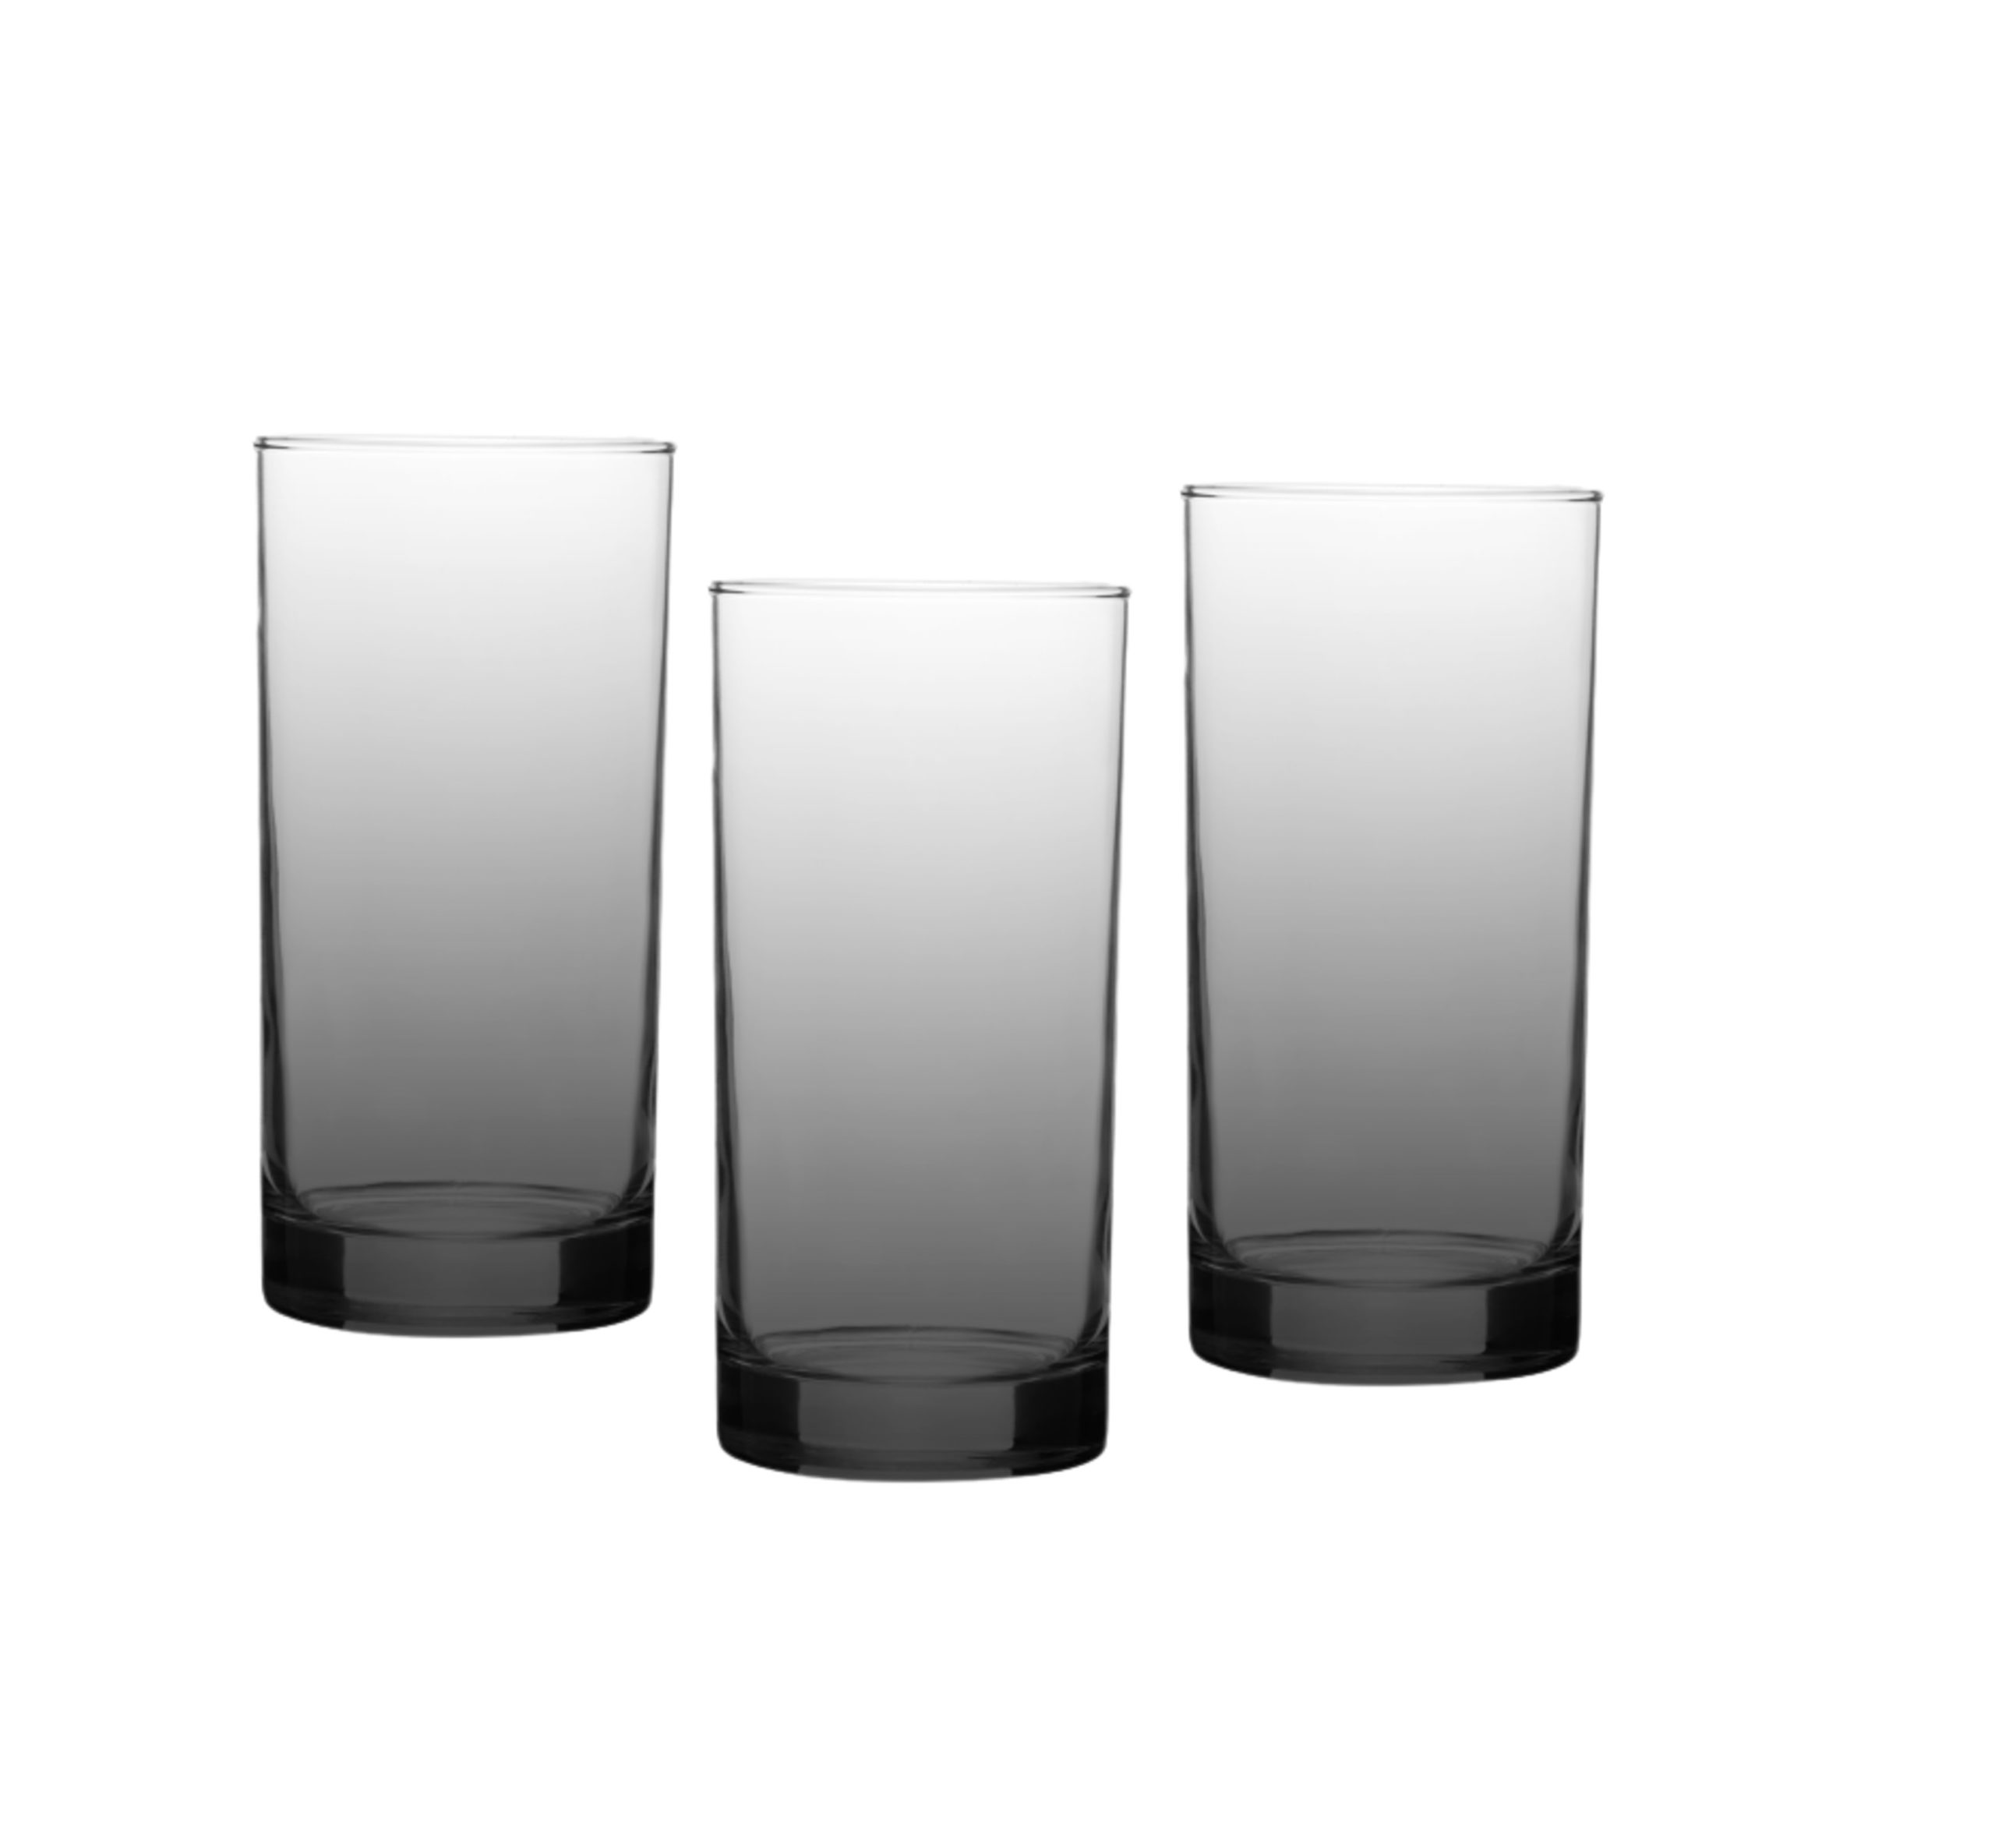  Elegante juego de 16, 8 vasos altos (16 onzas) y 8 vasos de  cristal (12 onzas), vasos de vidrio duraderos, juego de cristalería  transparente sin plomo, vasos de cóctel de grado